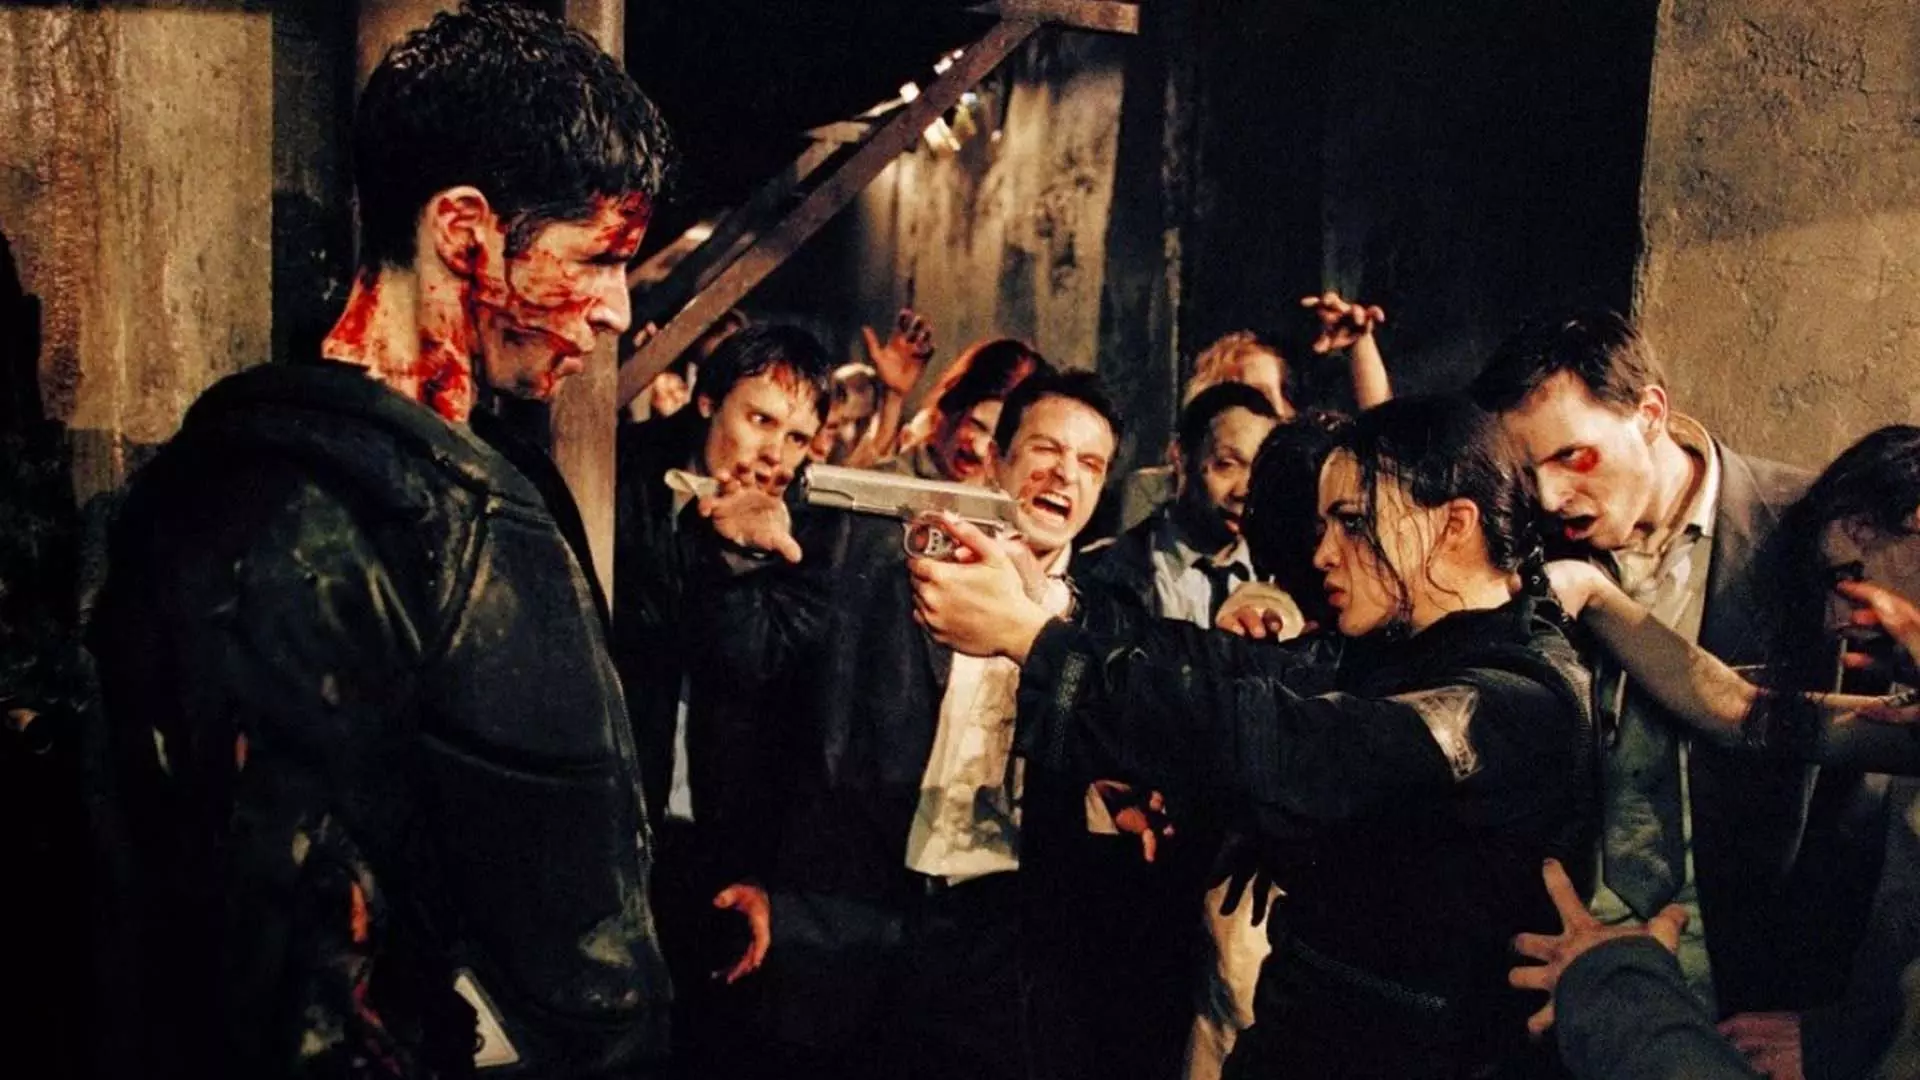 میشل رودریگز در فیلم Resident Evil اسلحه خود را به سمت شخصیت دیگری گرفته است